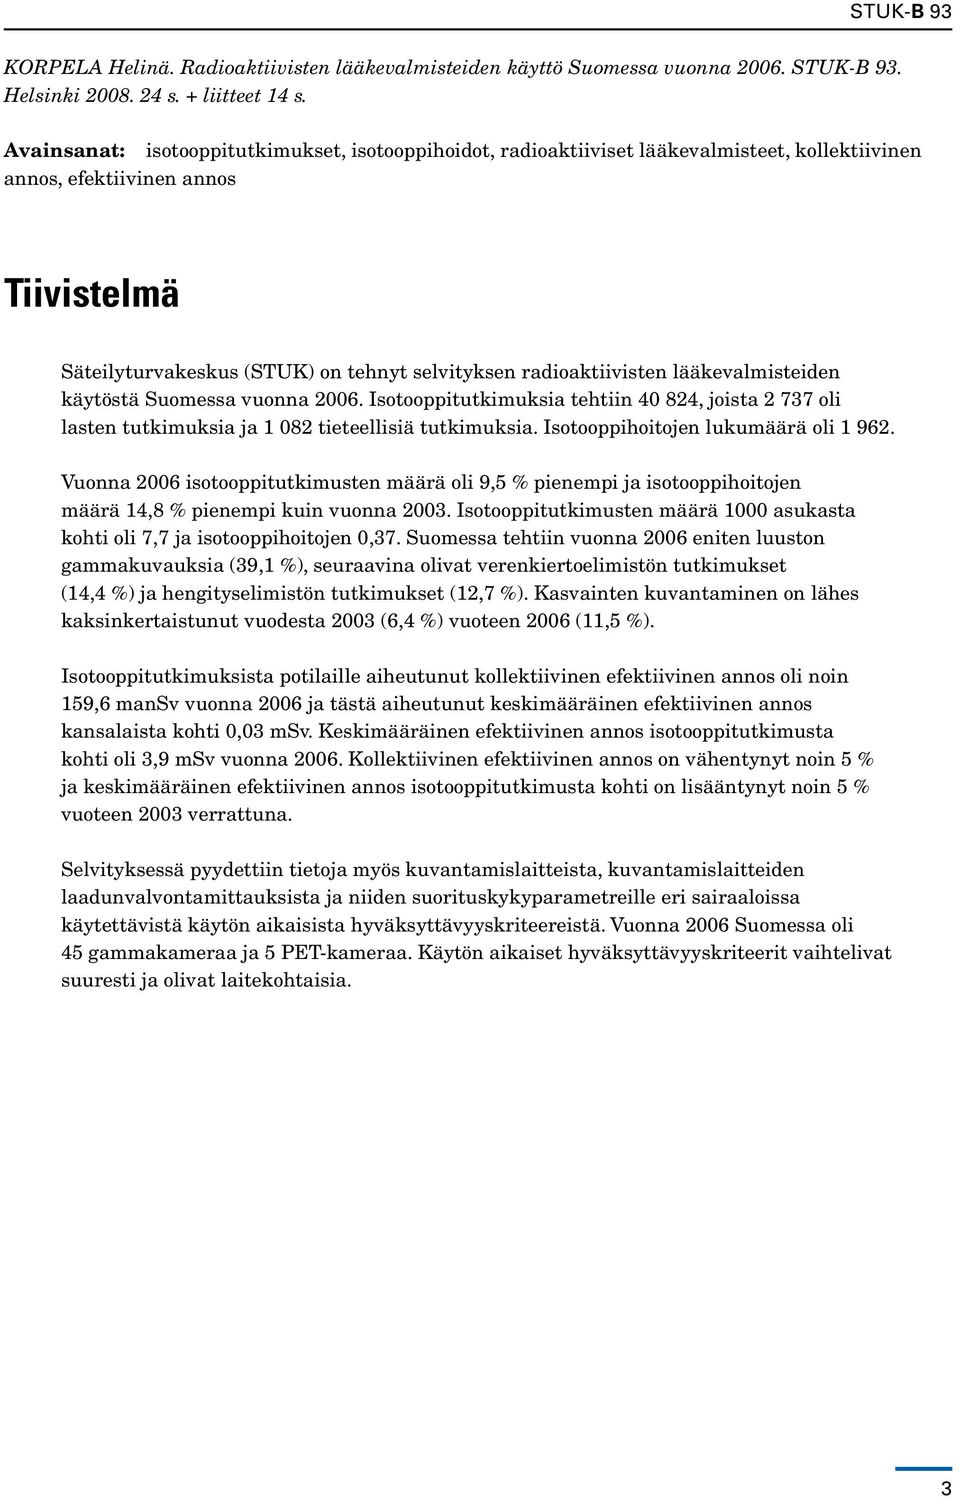 radioaktiivisten lääkevalmisteiden käytöstä Suomessa vuonna 2006. Isotooppitutkimuksia tehtiin 40 824, joista 2 737 oli lasten tutkimuksia ja 1 082 tieteellisiä tutkimuksia.